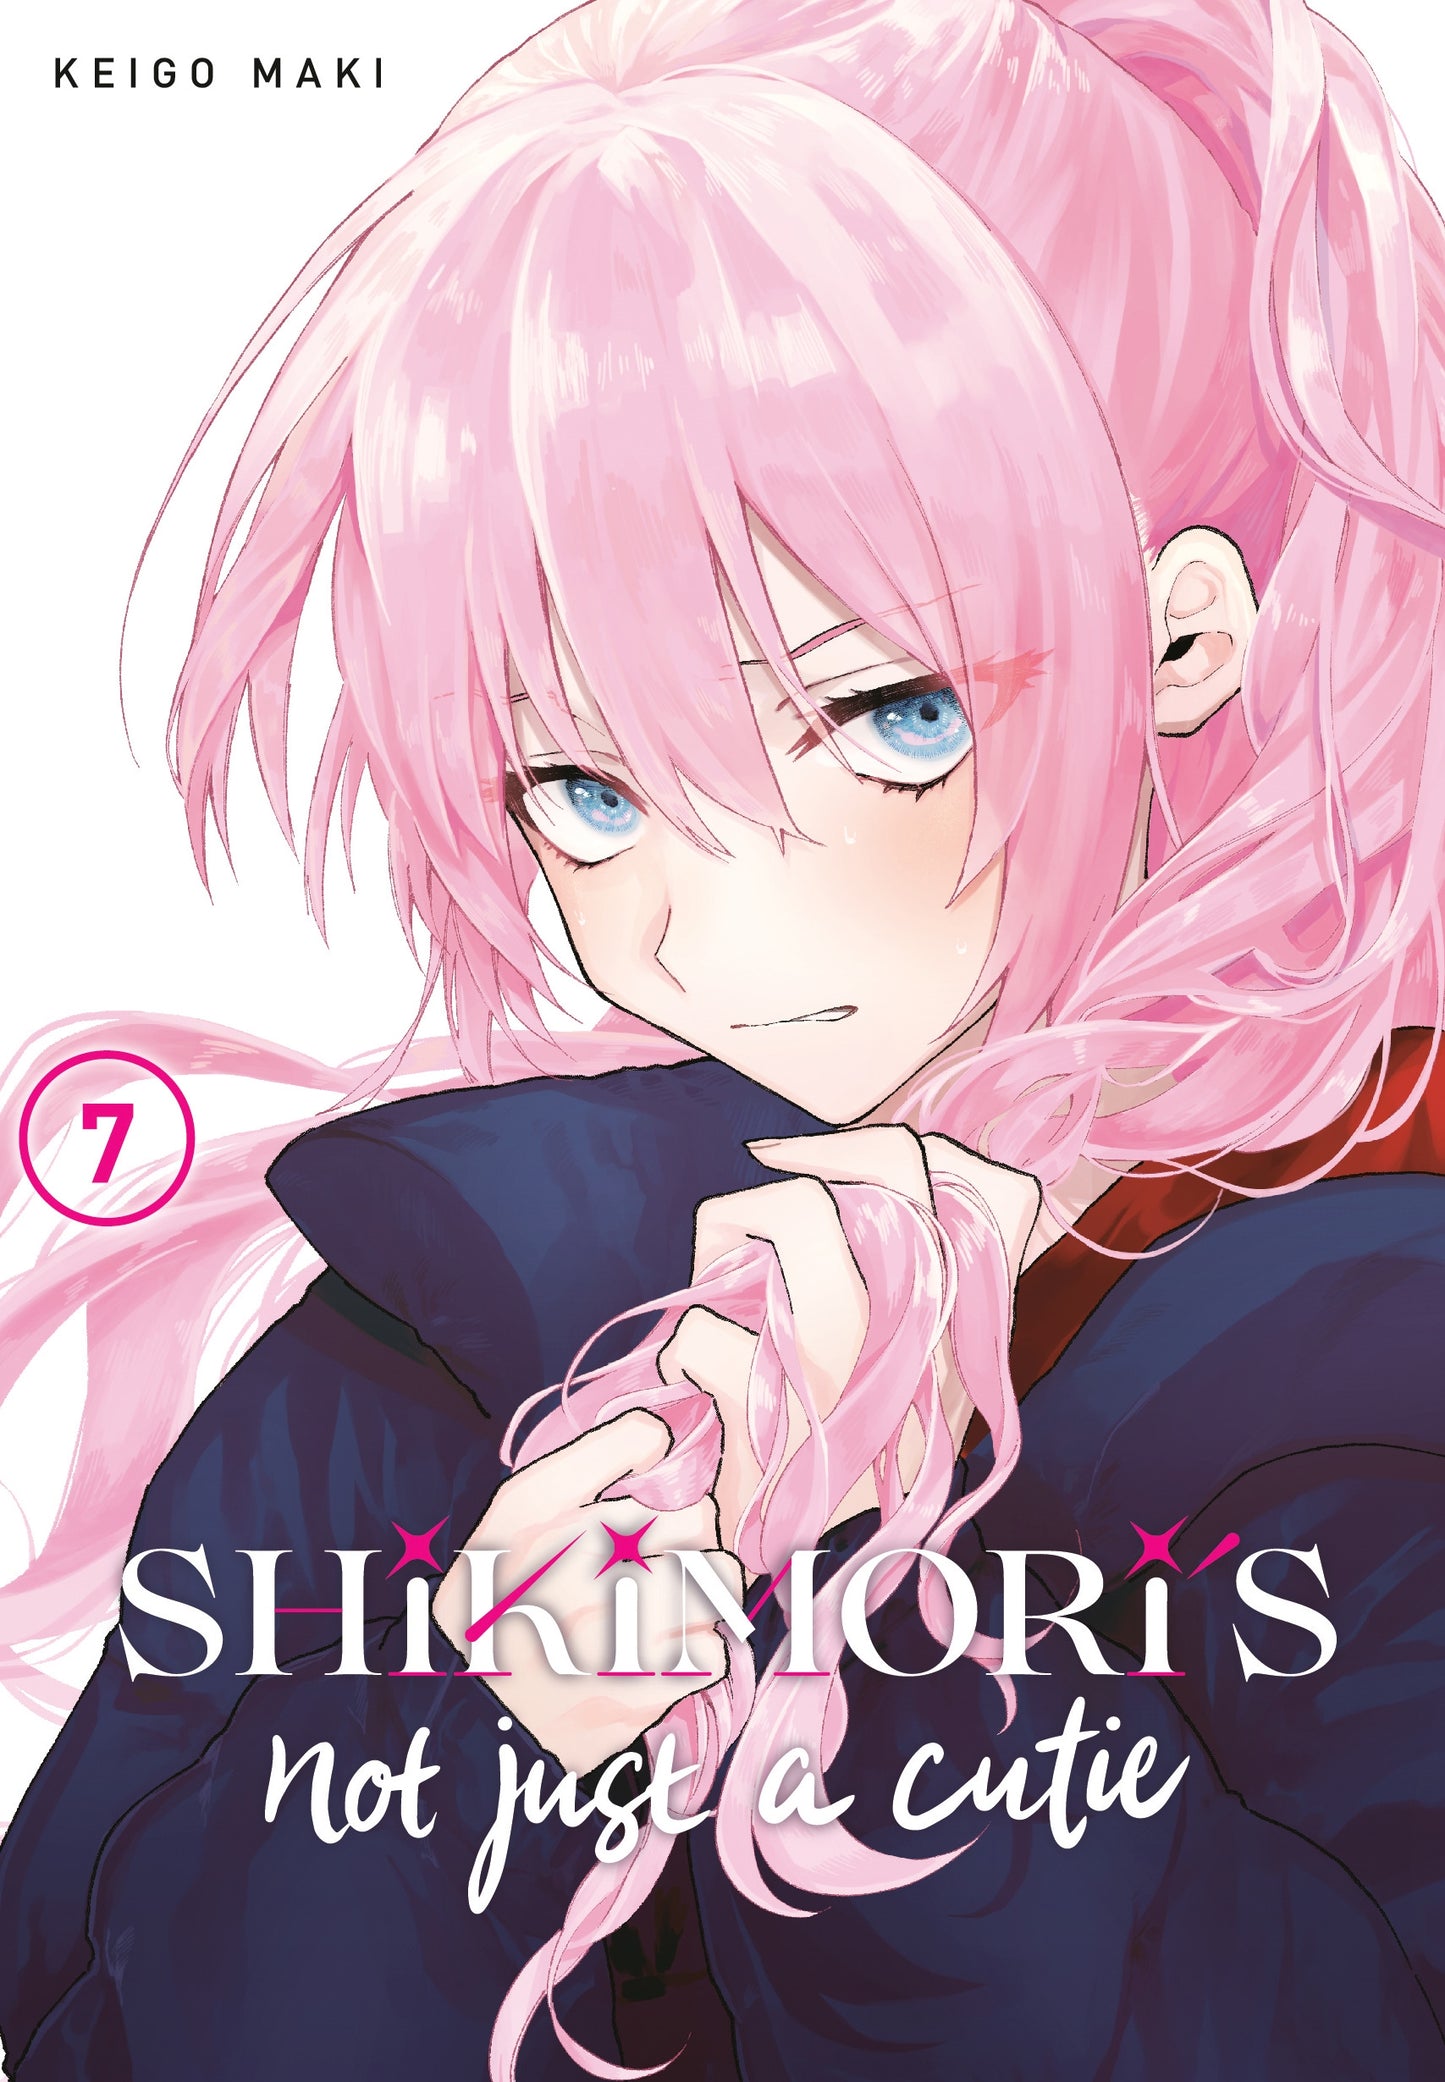 Shikimori's Not Just a Cutie 7 - Manga Warehouse